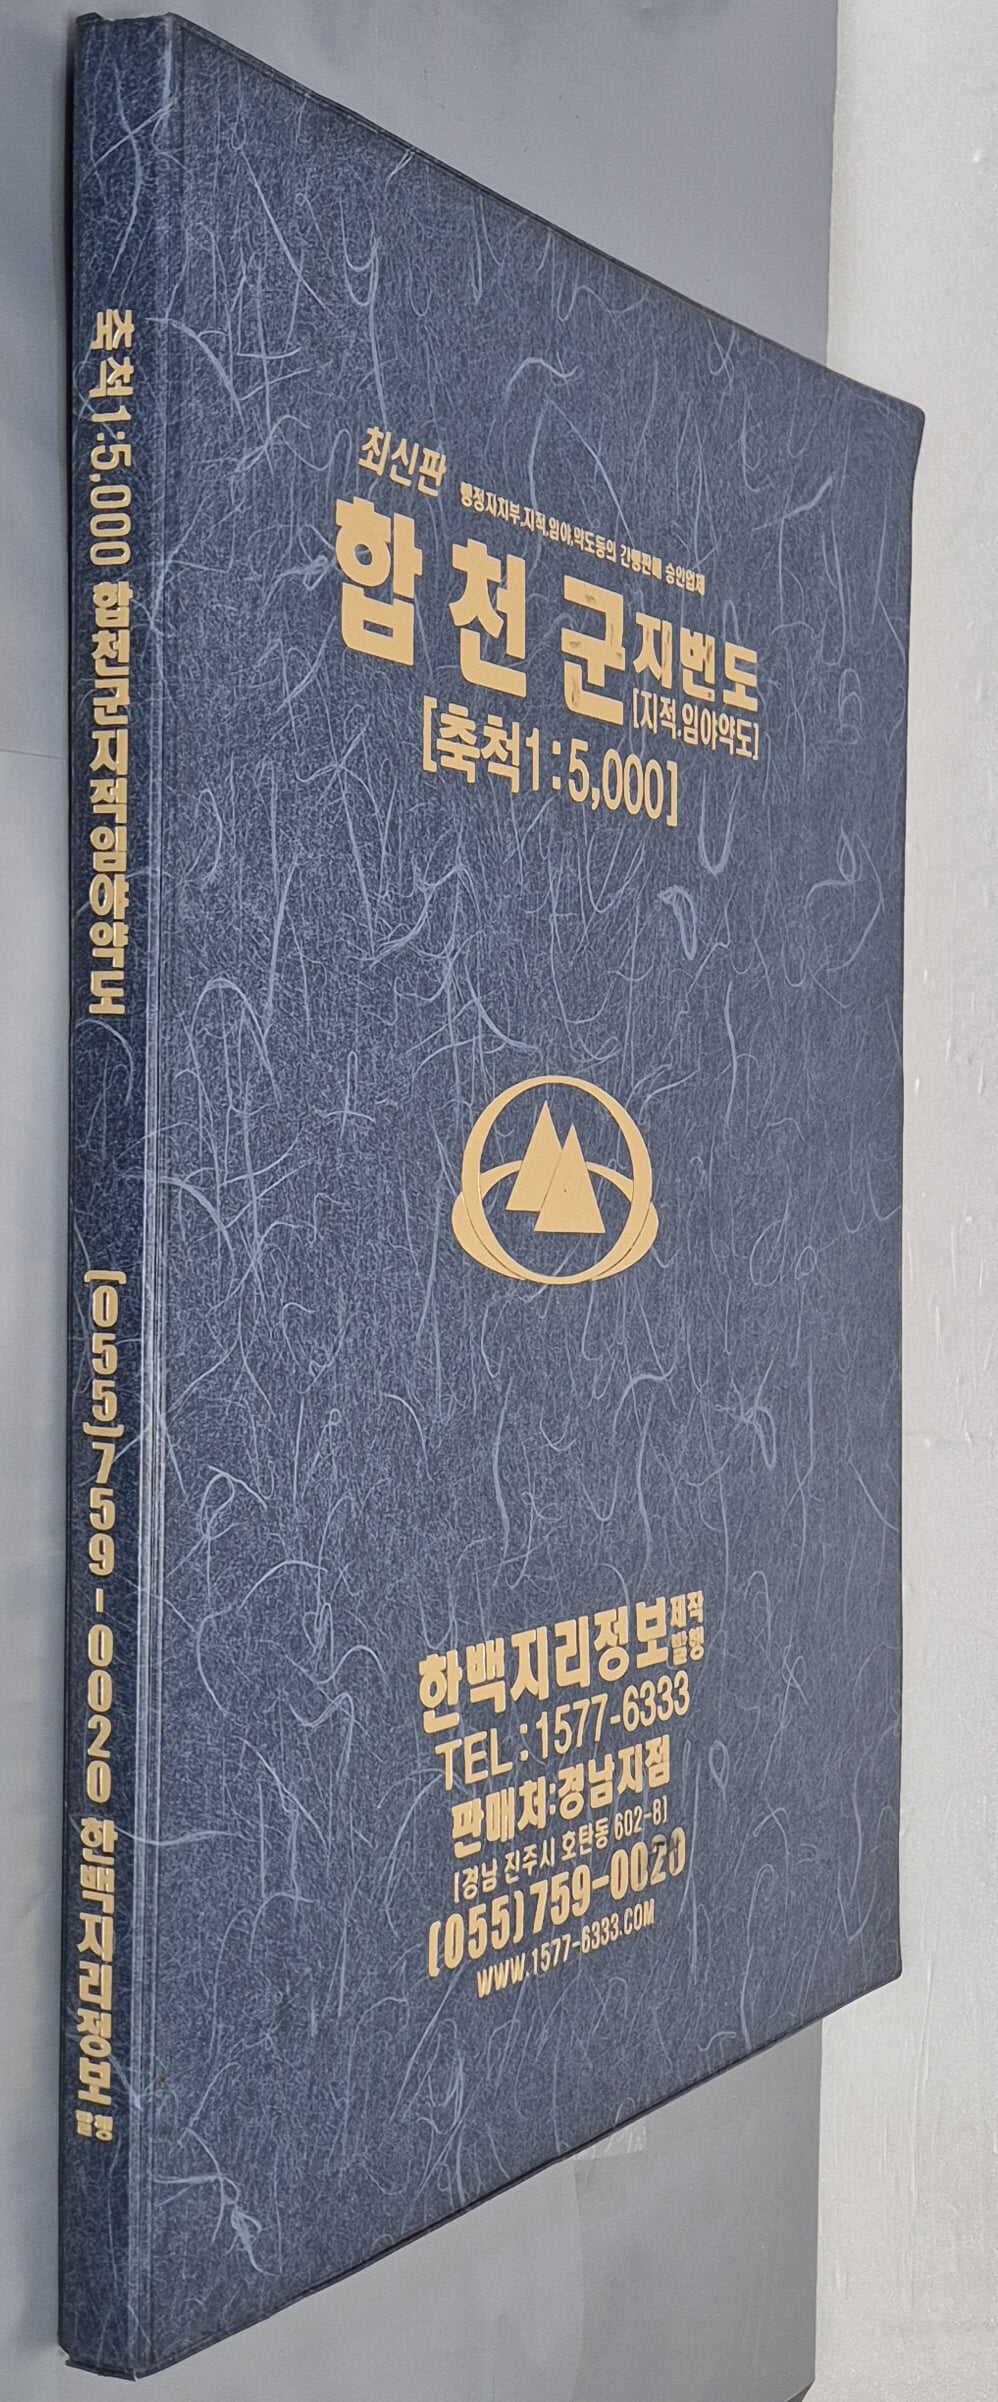 최신판 합천군 지적, 임야 약도 (축척:1/5,000) - 2005년 한백지리정보